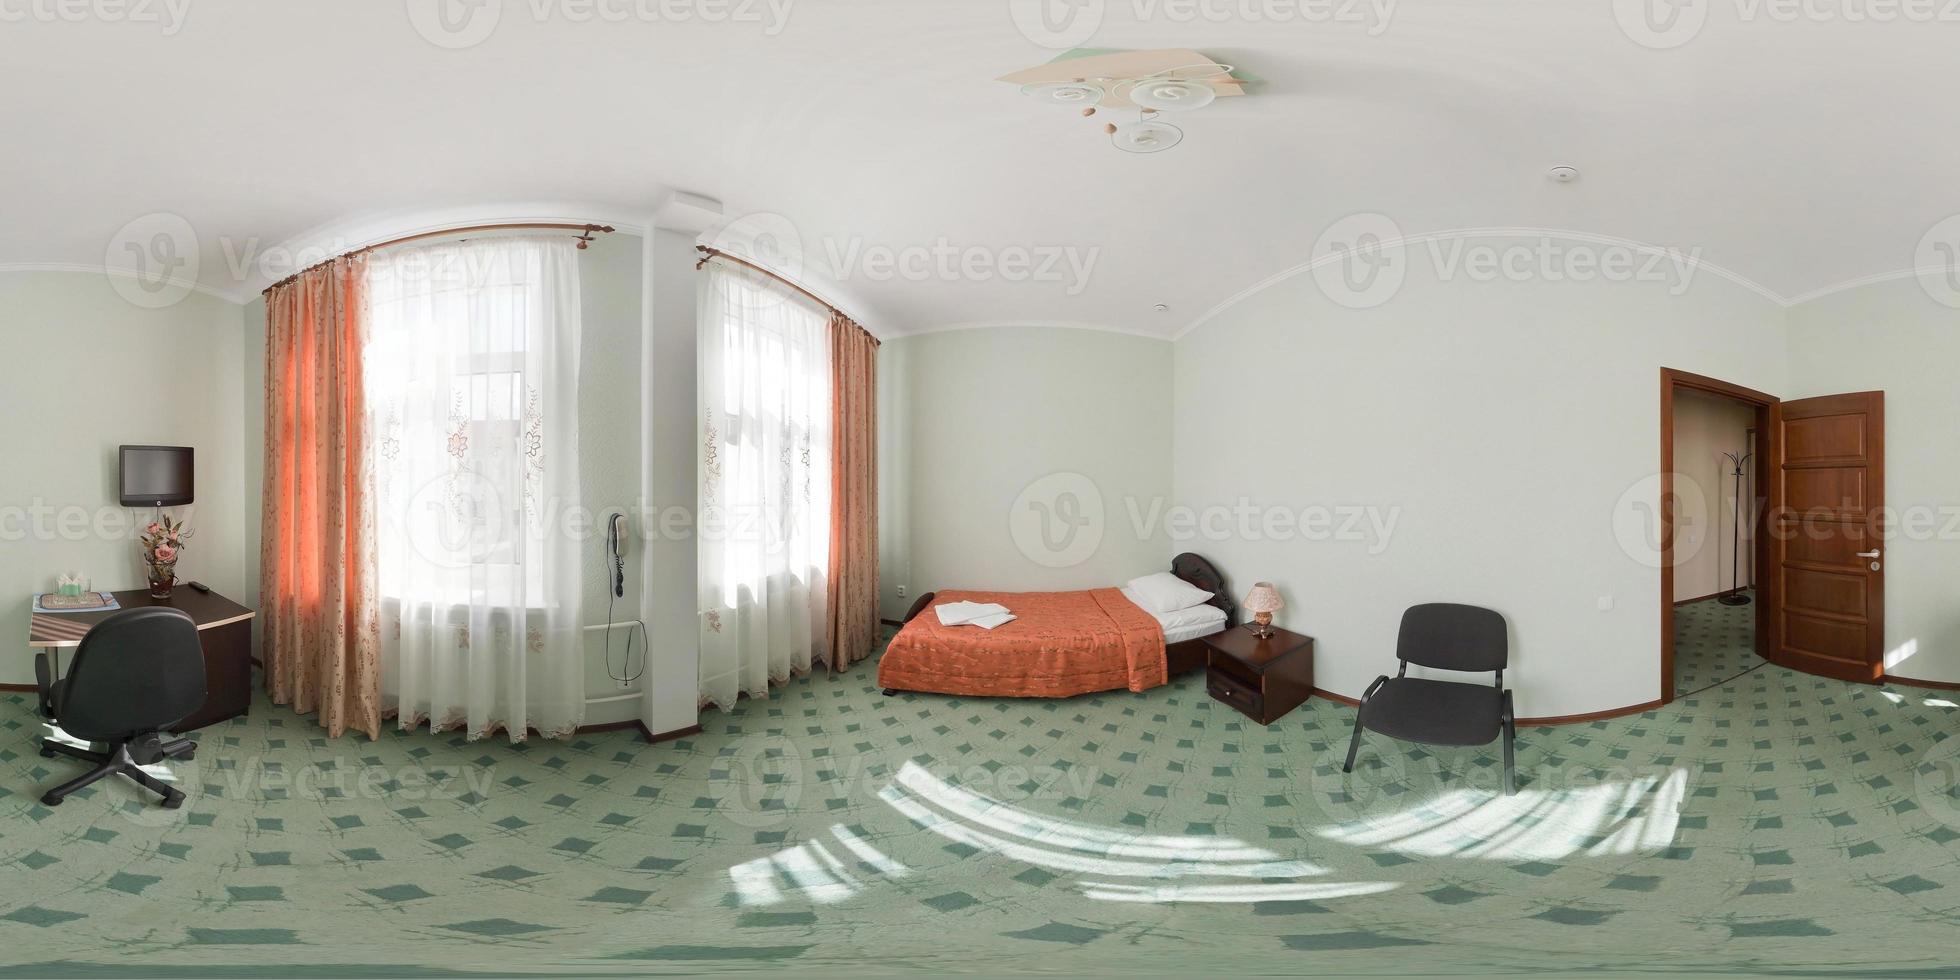 panorama 360 sem costura no interior do quarto de albergue barato, apartamento ou apartamentos com cadeiras e mesa em projeção equirretangular com zênite e nadir. conteúdo vr foto